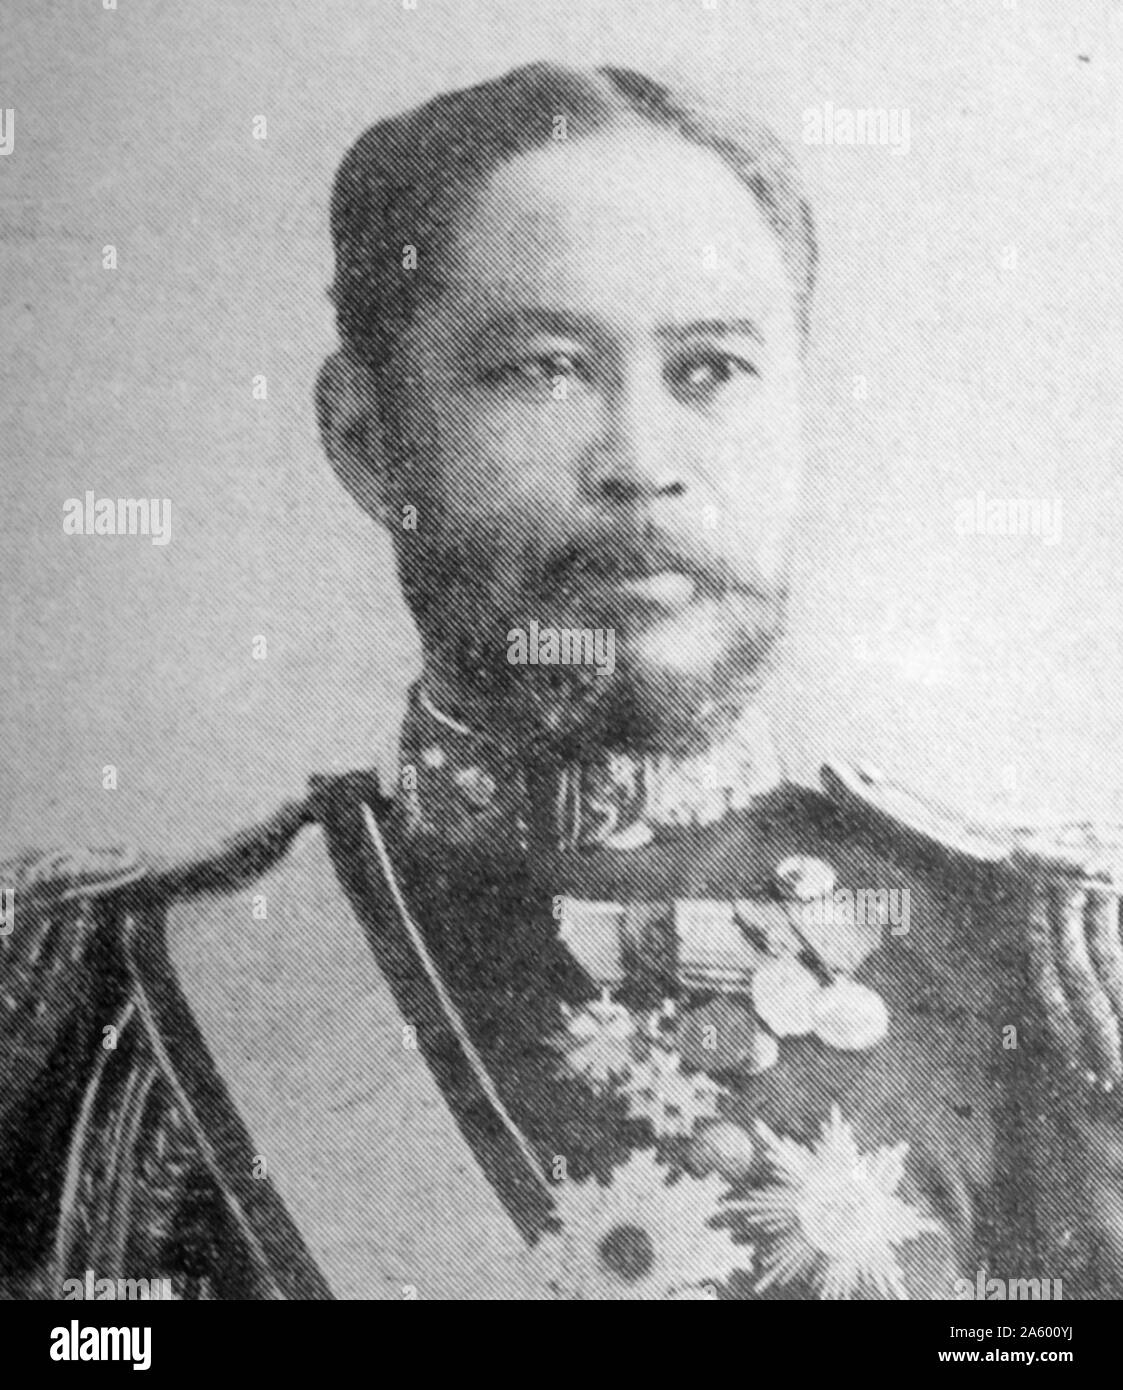 Fotografisches Porträt von Yamamoto Gonnohy? e (1852-1933) Admiral in der kaiserlichen japanischen Marine und Premierminister von Japan. Vom 19. Jahrhundert Stockfoto